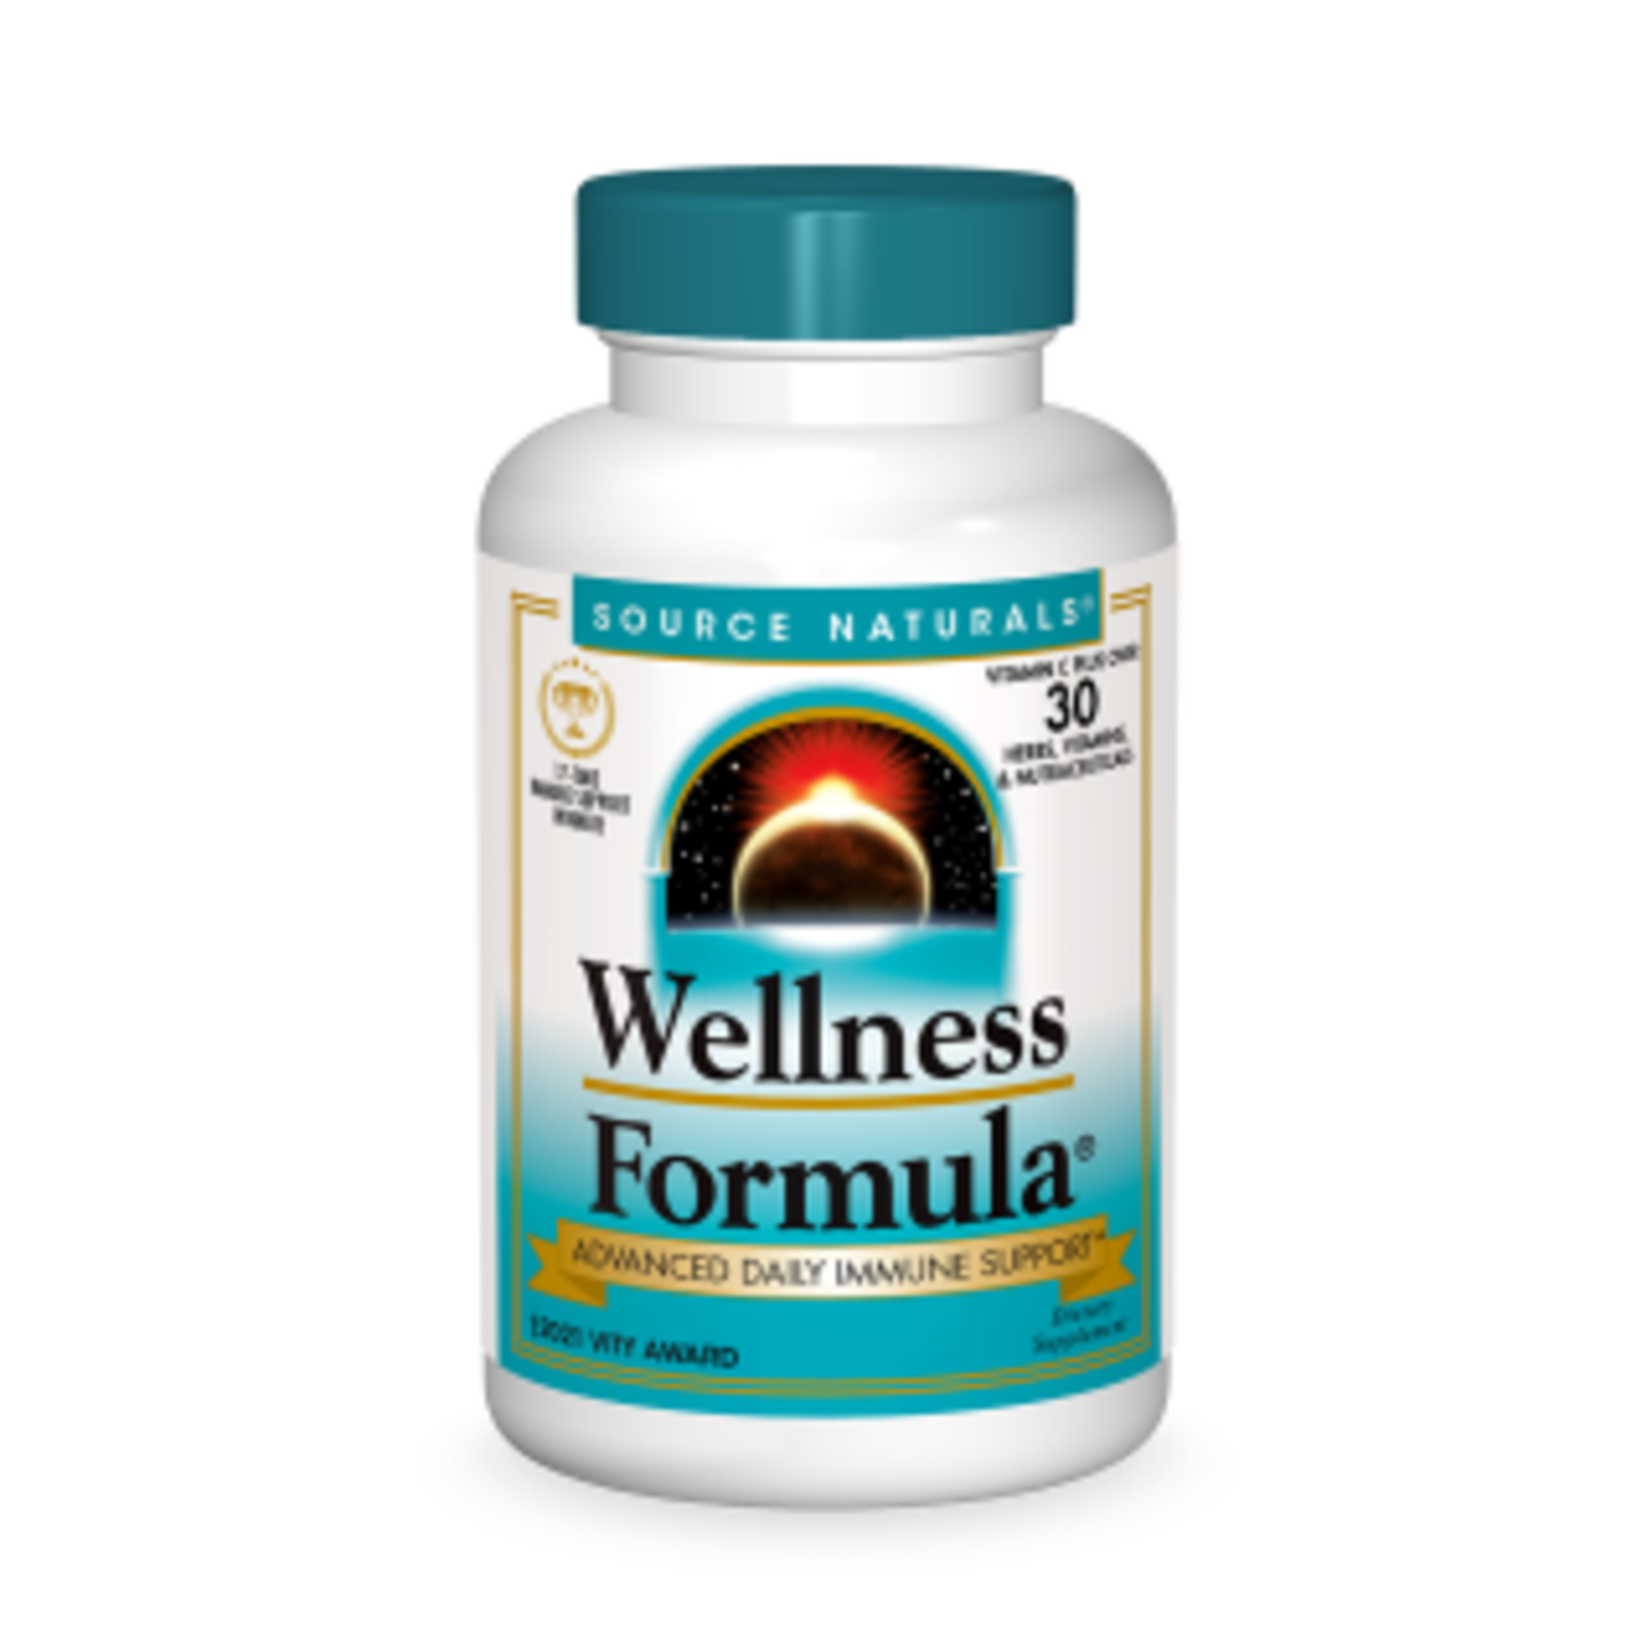 Source Naturals Source Naturals - Wellness Formula - 45 Tablets